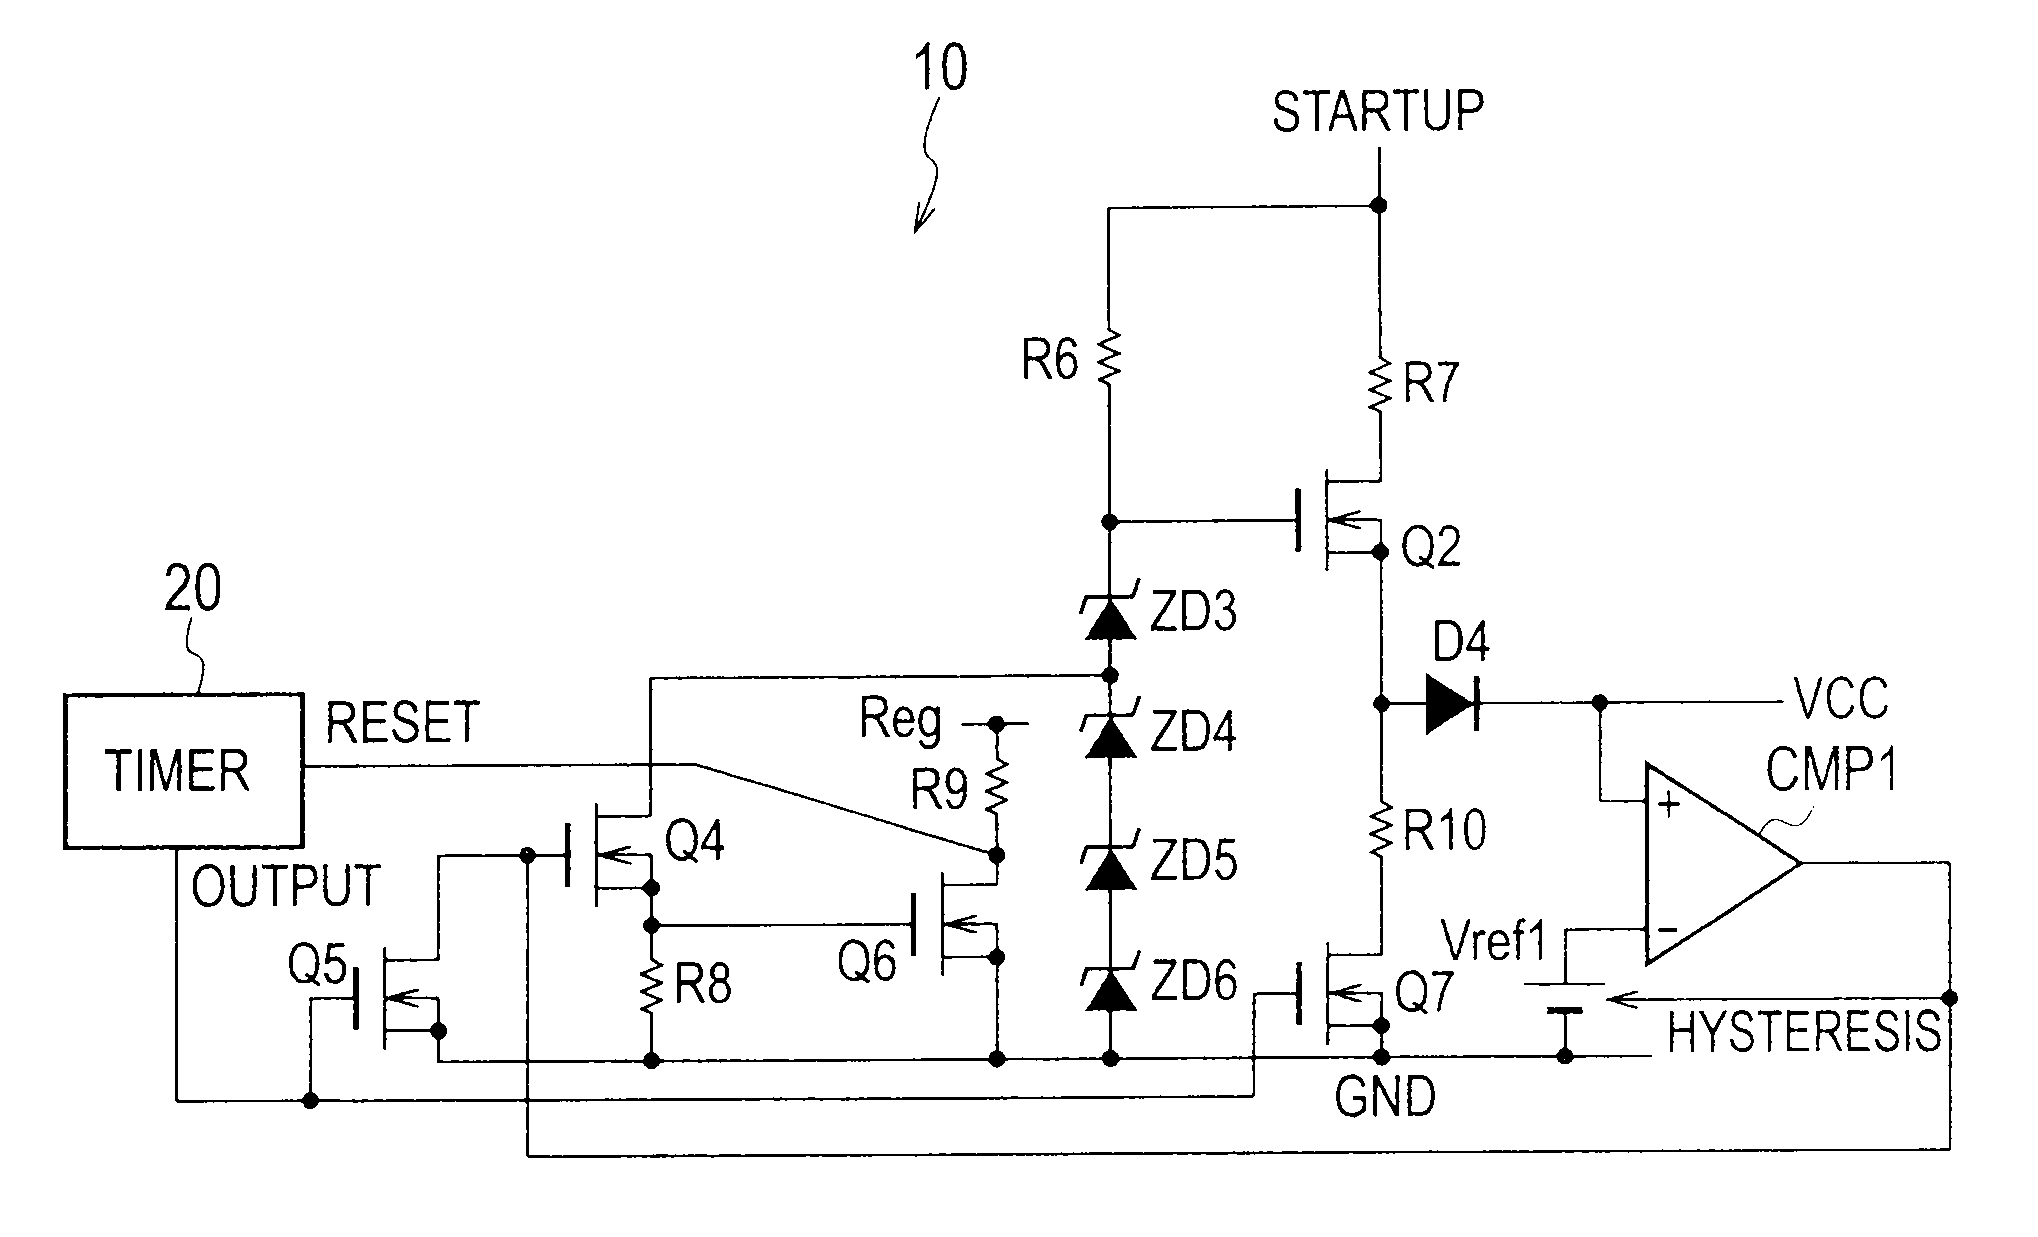 Startup circuit